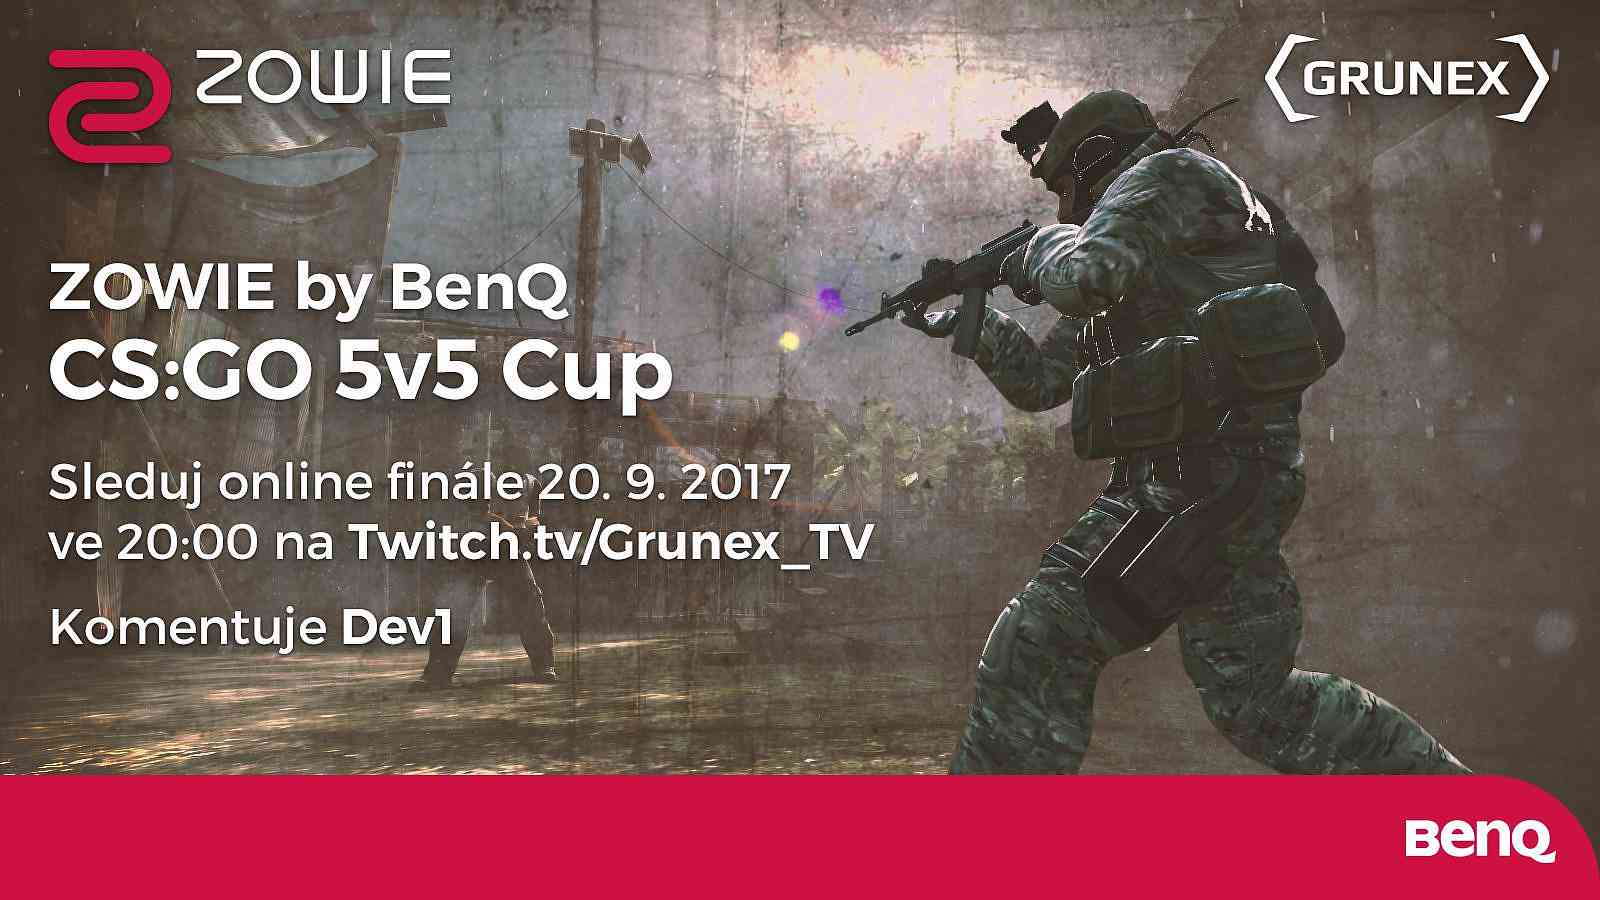 Čtyři kvalifikace za námi, Online Finále ZOWIE by BenQ CS:GO Cupu před námi!